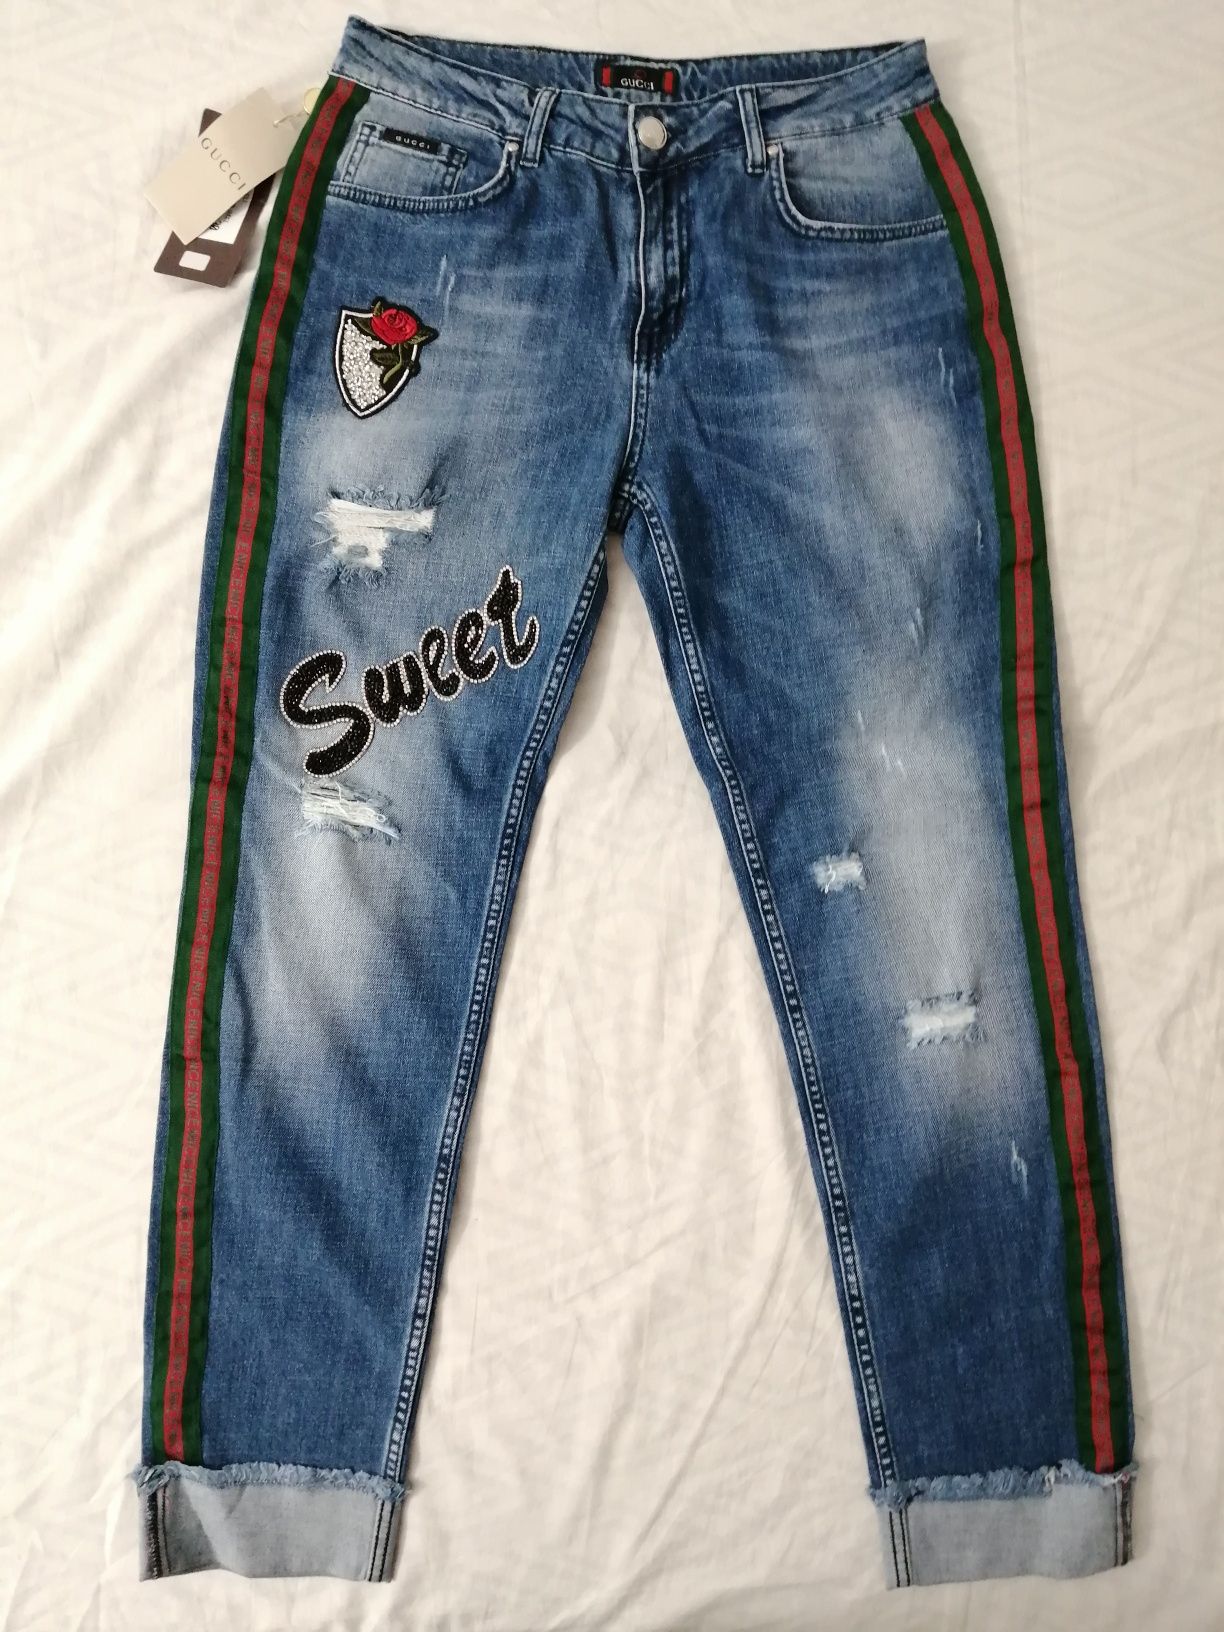 NOWE damskie spodnie jeansowe Gucci jeansy gg spodnie jeans 30 L